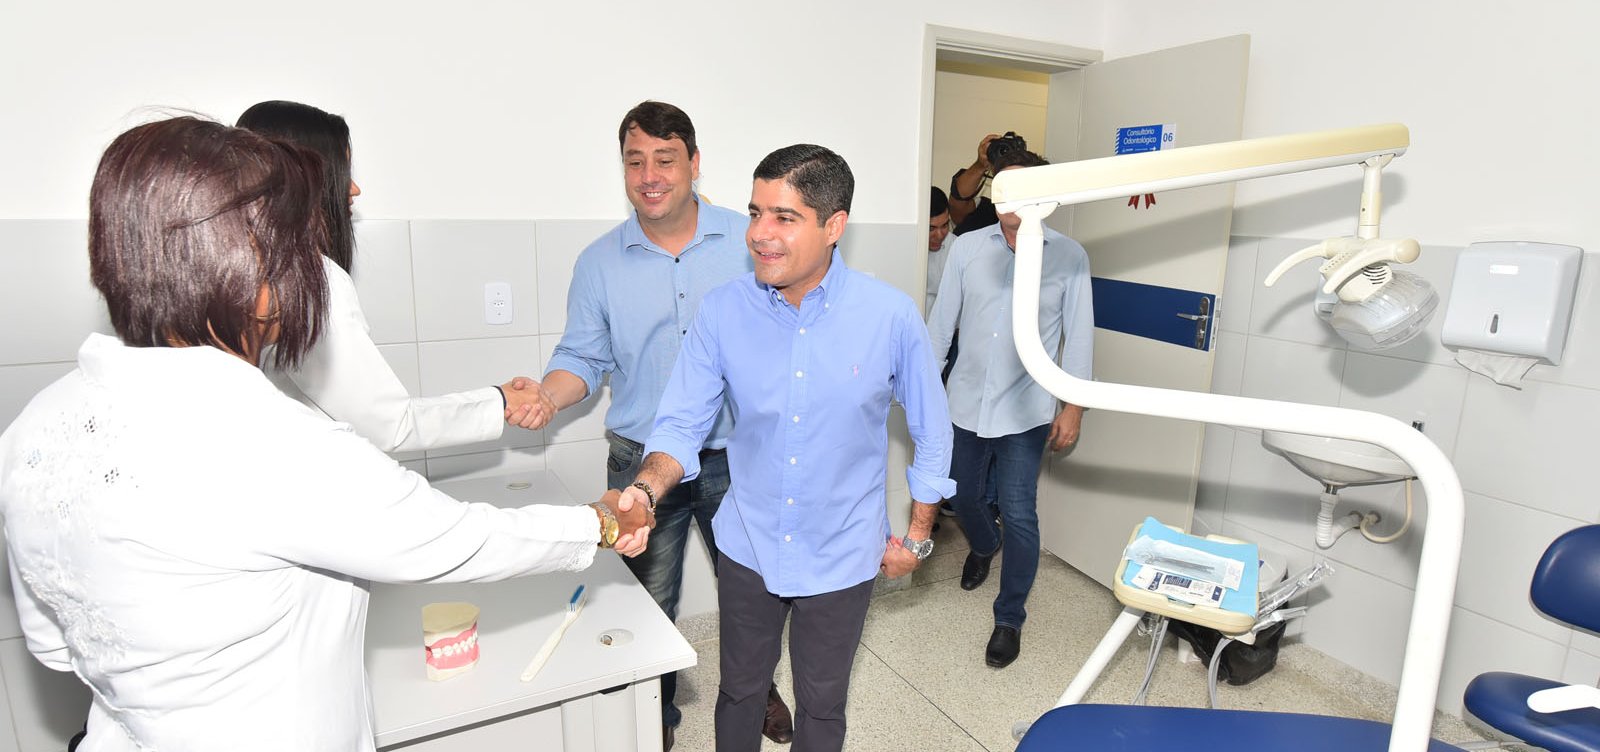 Prefeitura reinaugura centro de saúde na Boca do Rio